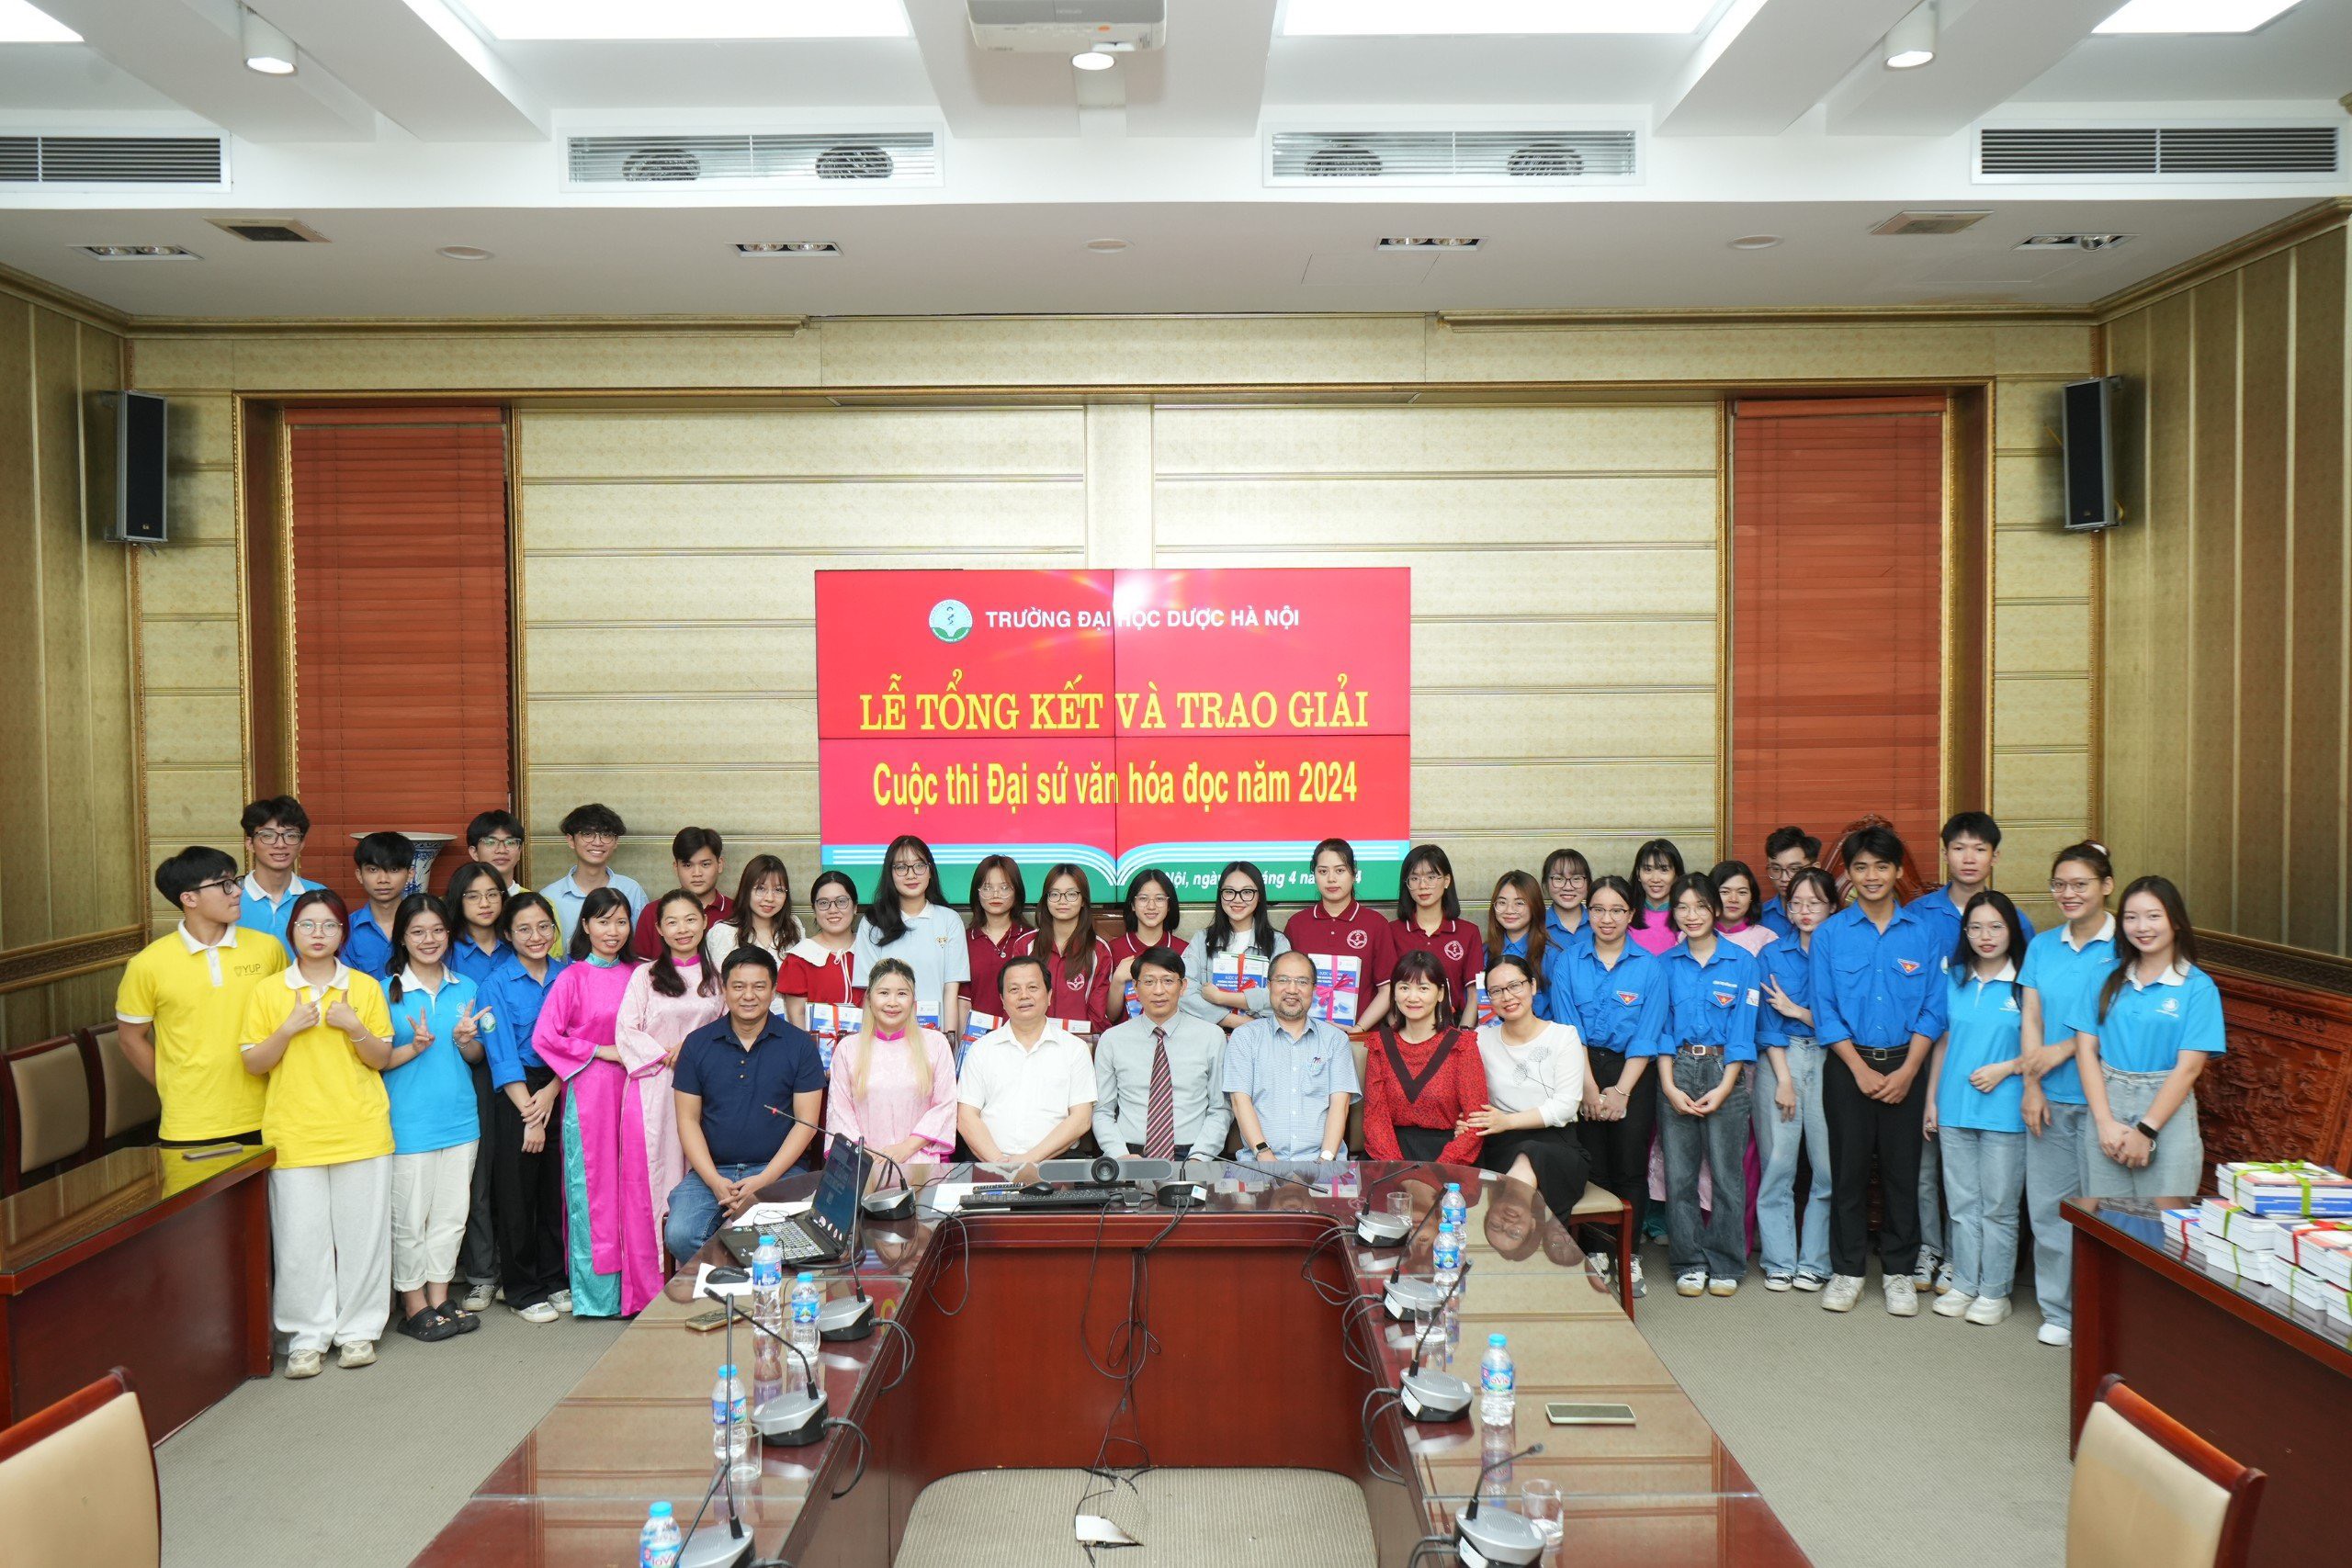 Trường Đại học Dược Hà Nội tổ chức thành công  "Cuộc thi Đại sứ Văn hóa đọc 2024" vòng sơ khảo